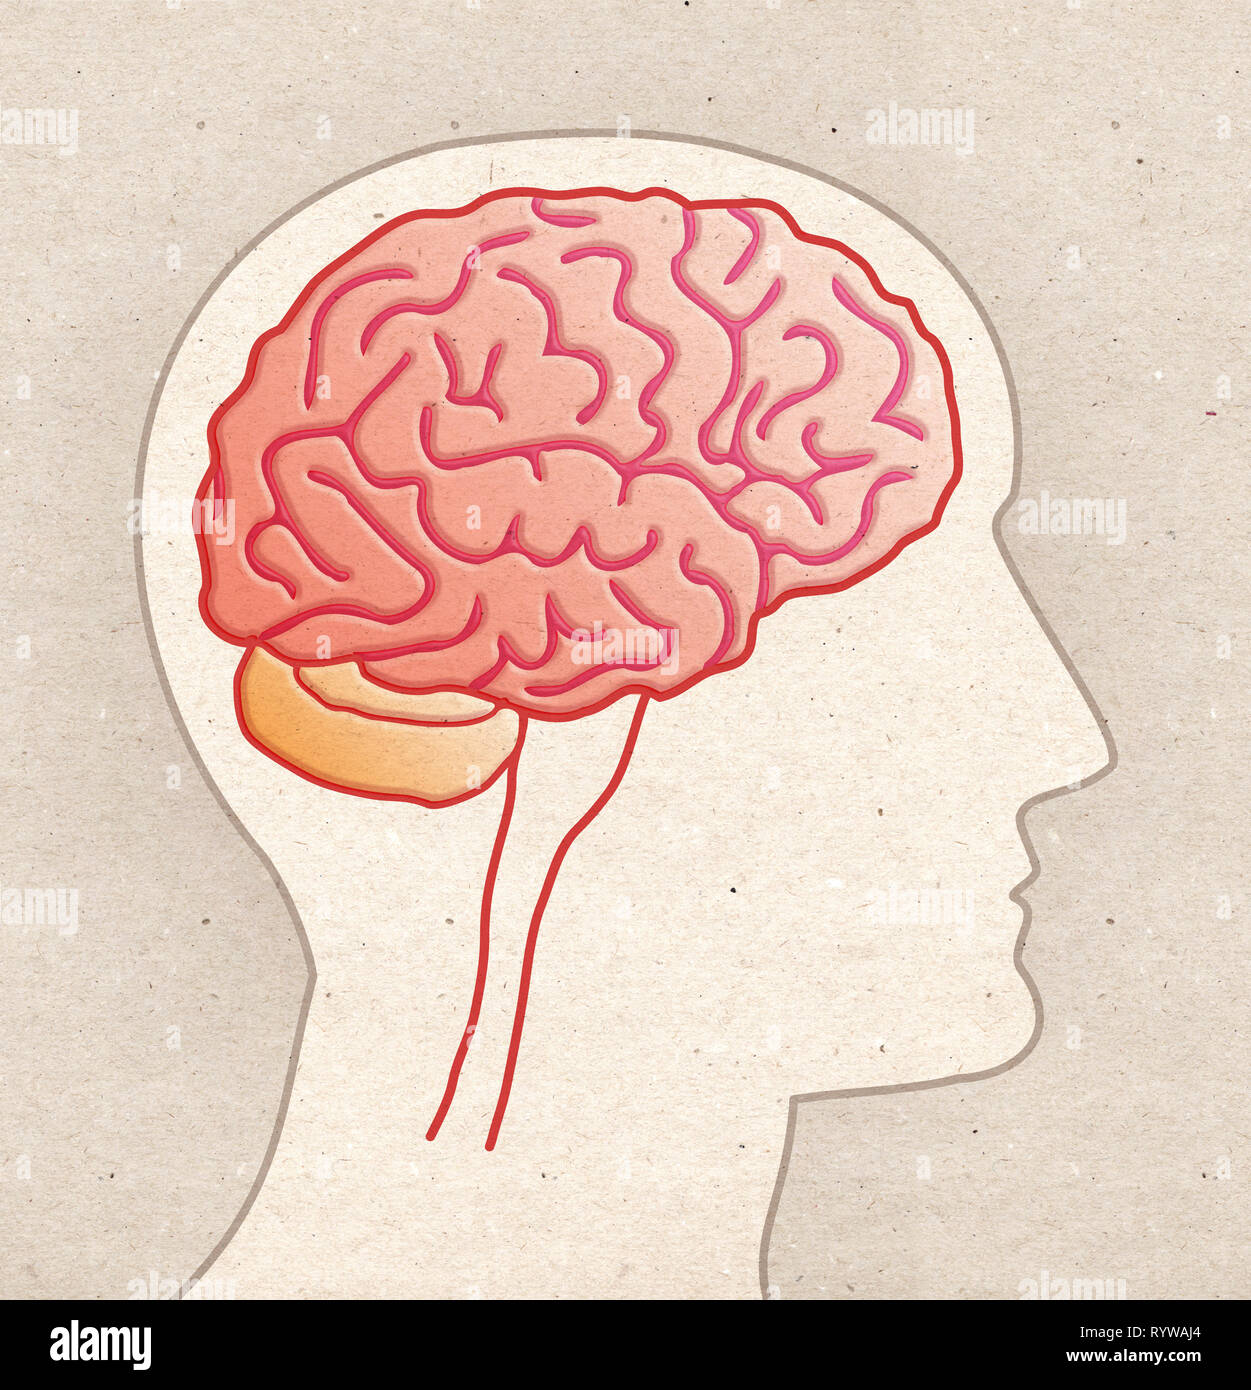 L'anatomie humaine dessin - Tête de profil avec vue latérale du cerveau Banque D'Images